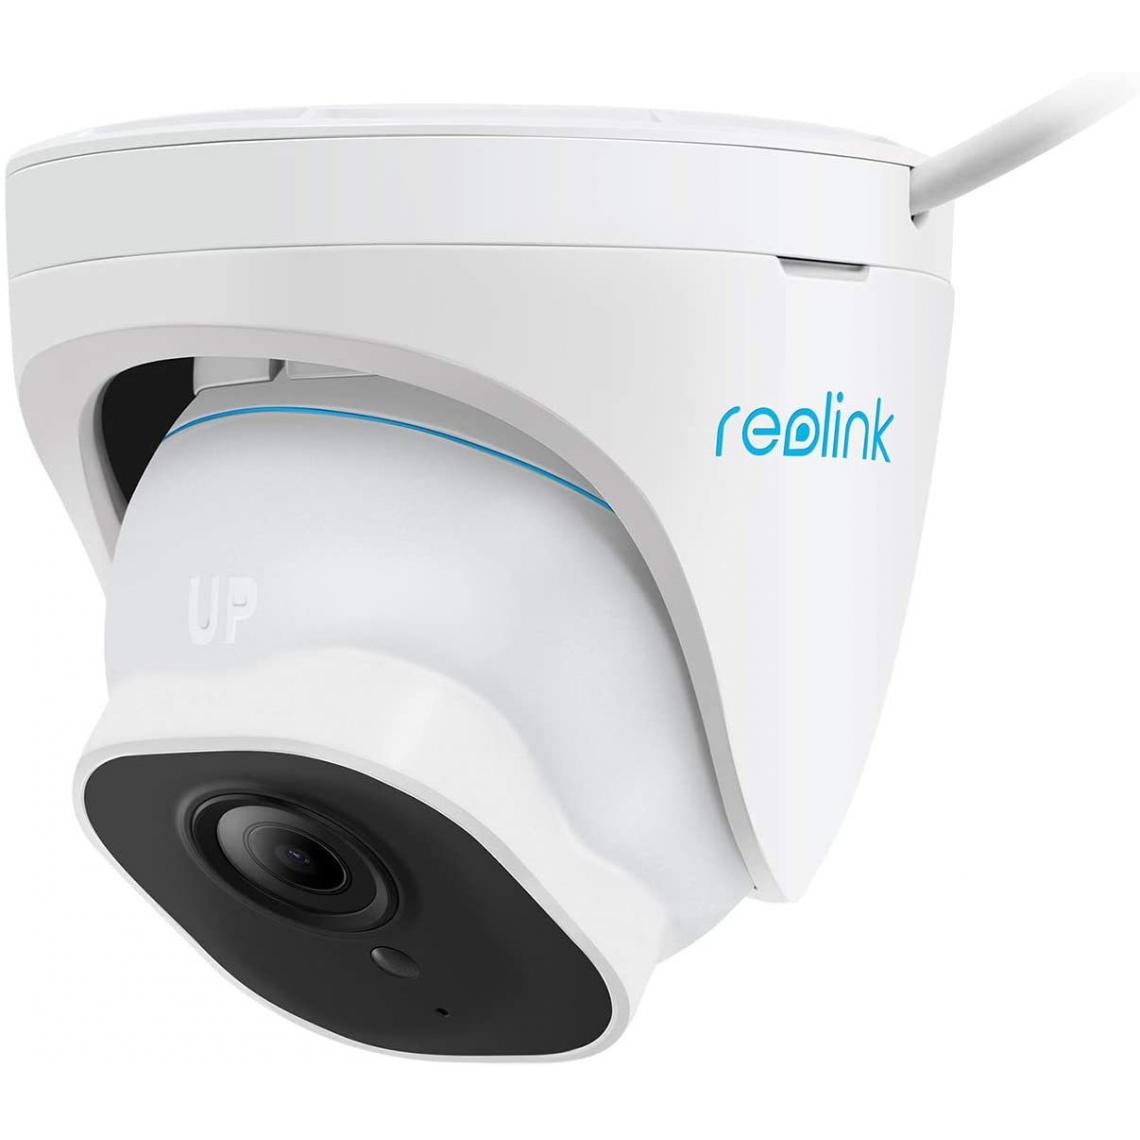 Reolink - Caméra de Surveillance Extérieure PoE Dôme 4K/8MP - RLC-820A avec Détection Personne/Véhicule, Vision Nocturne IR, Caméra IP - Caméra de surveillance connectée